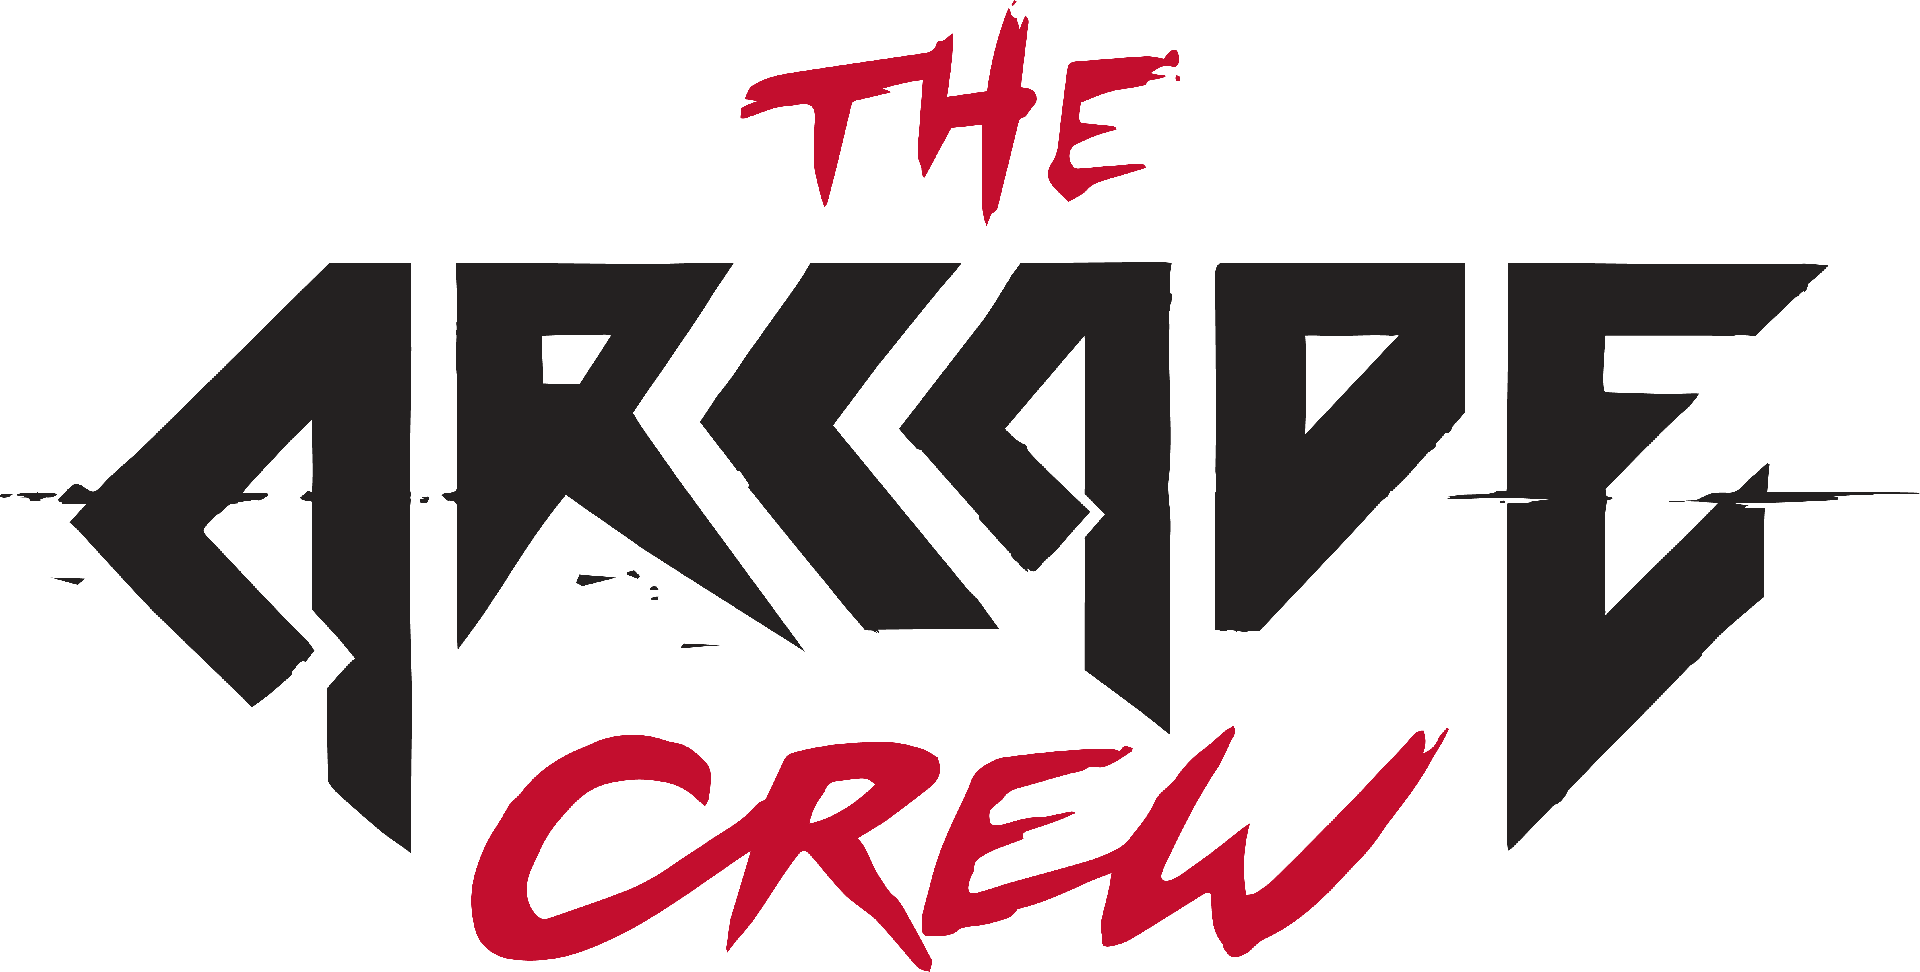 The Arcade Crew - Logo 1 [logo.png]